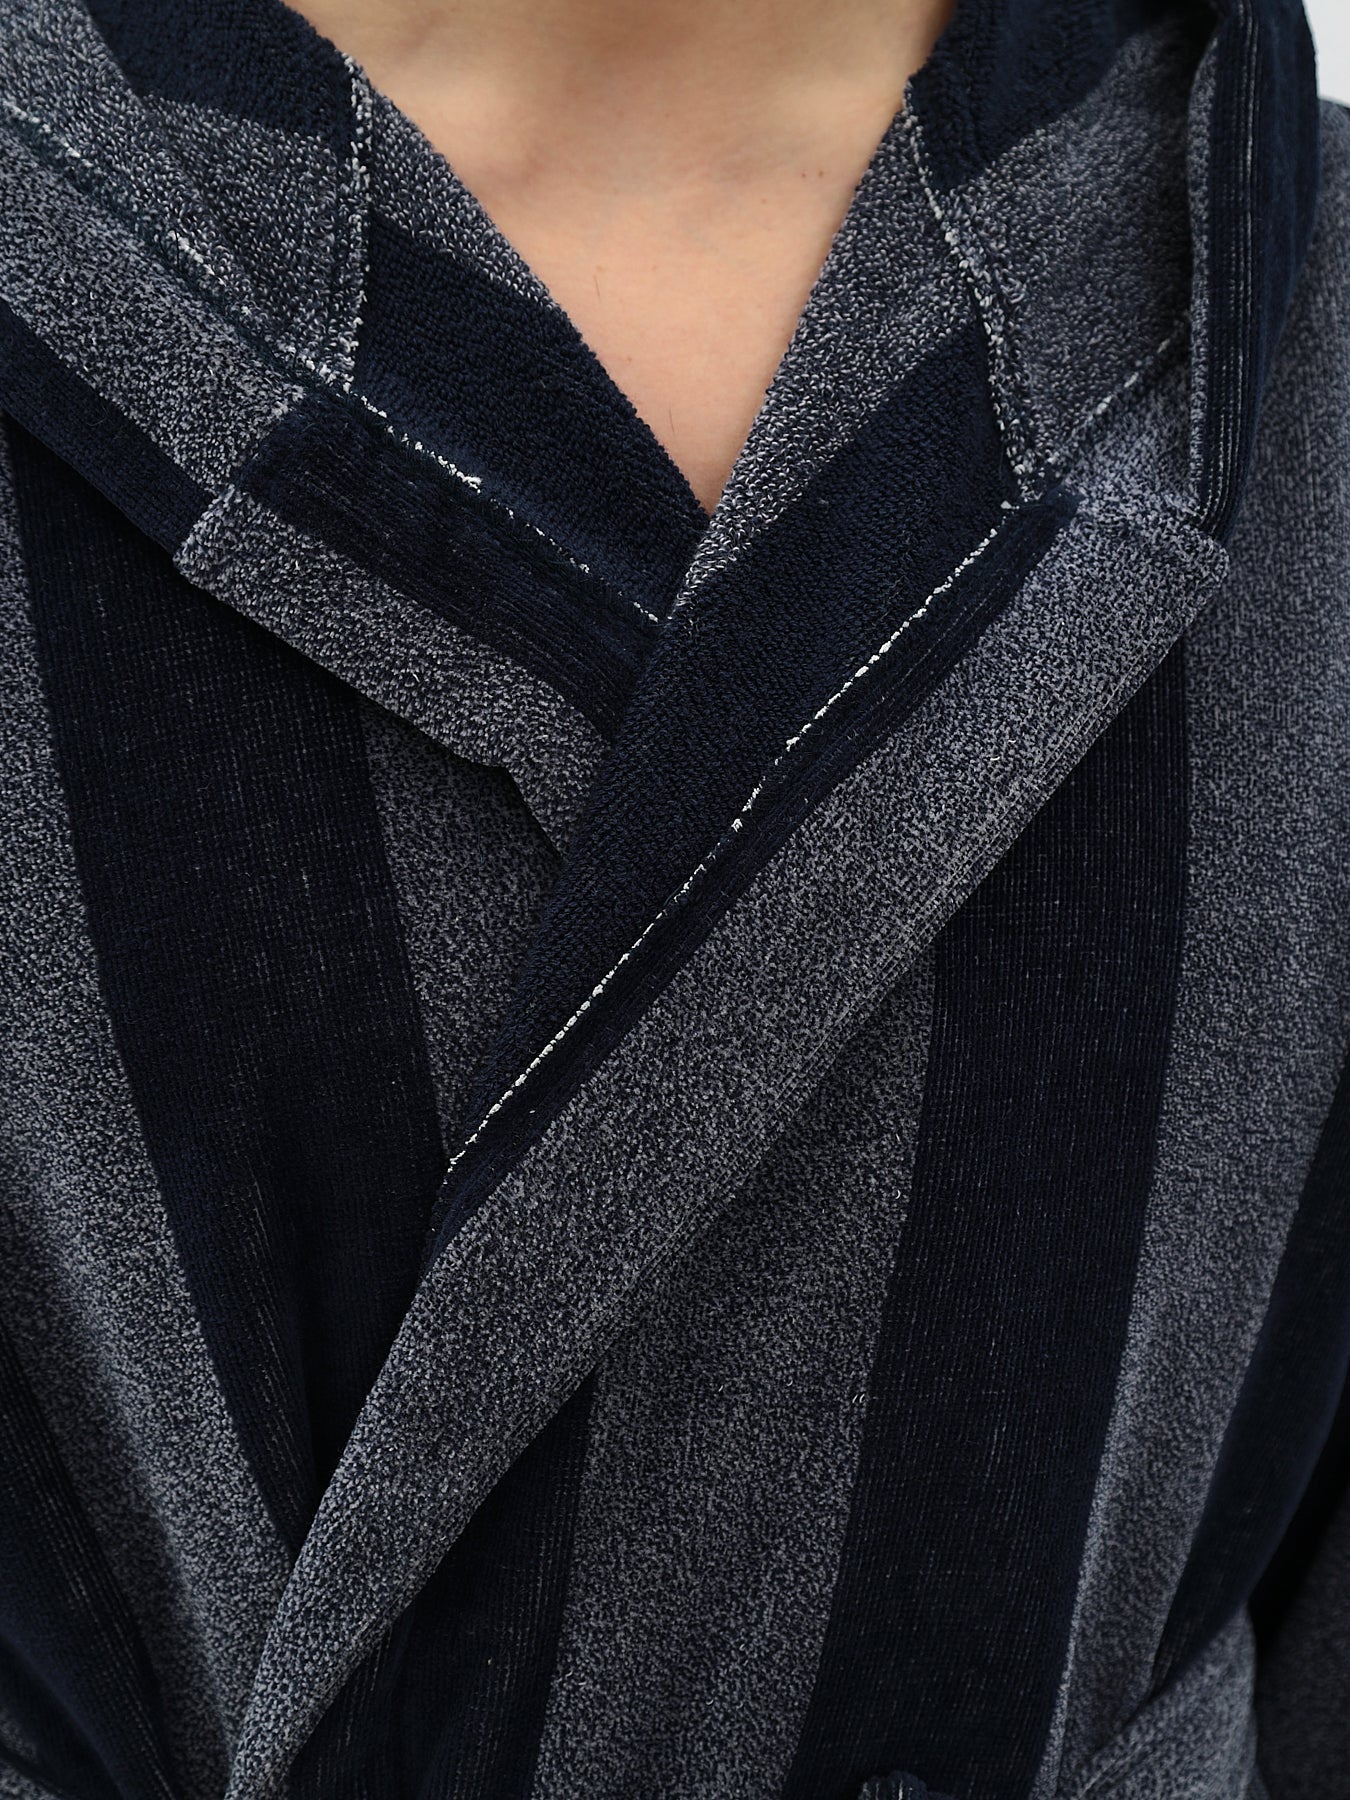 Herren Bademantel mit Kapuzel aus 100% Baumwolle in Velour melange Stripe Design LMS-6613 Marinenblau/Weiß Melange